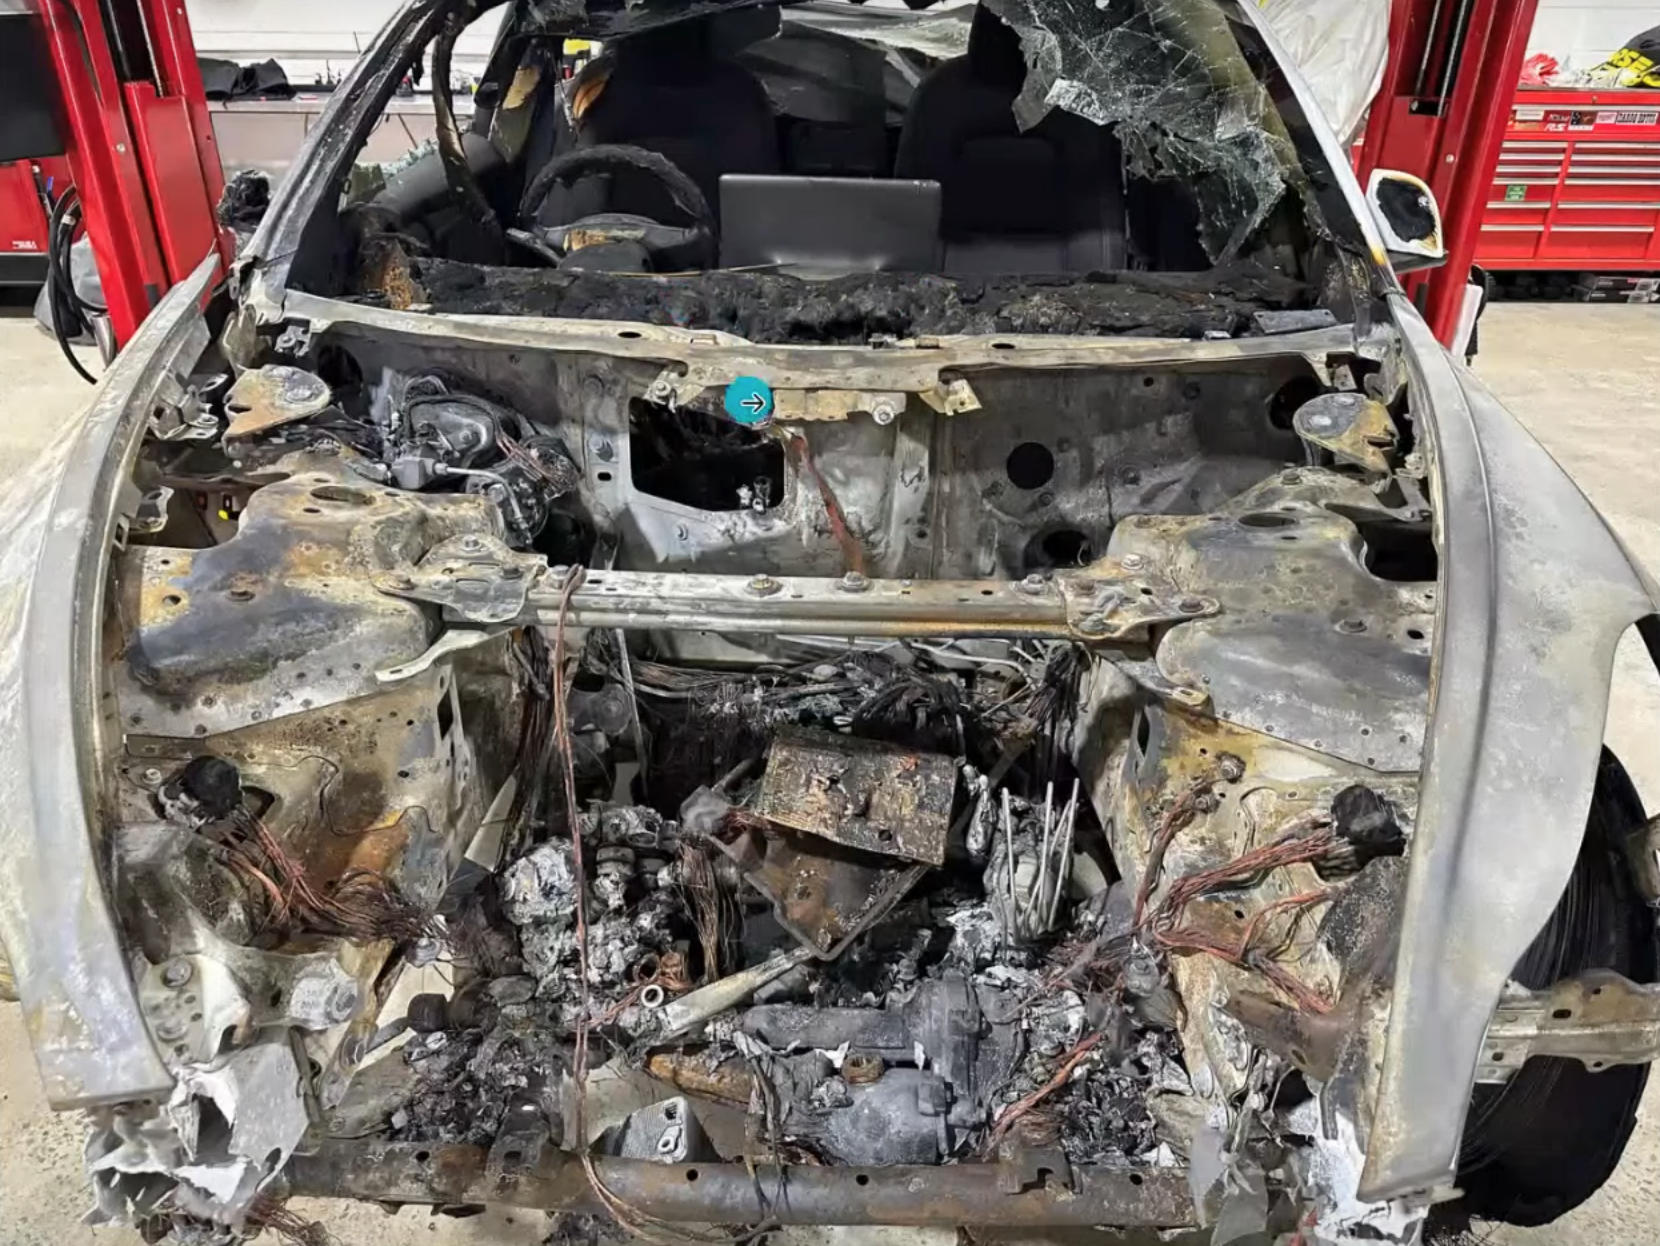 特斯拉向澳大利亚火灾安全调查组织捐赠被销毁的 Model 3